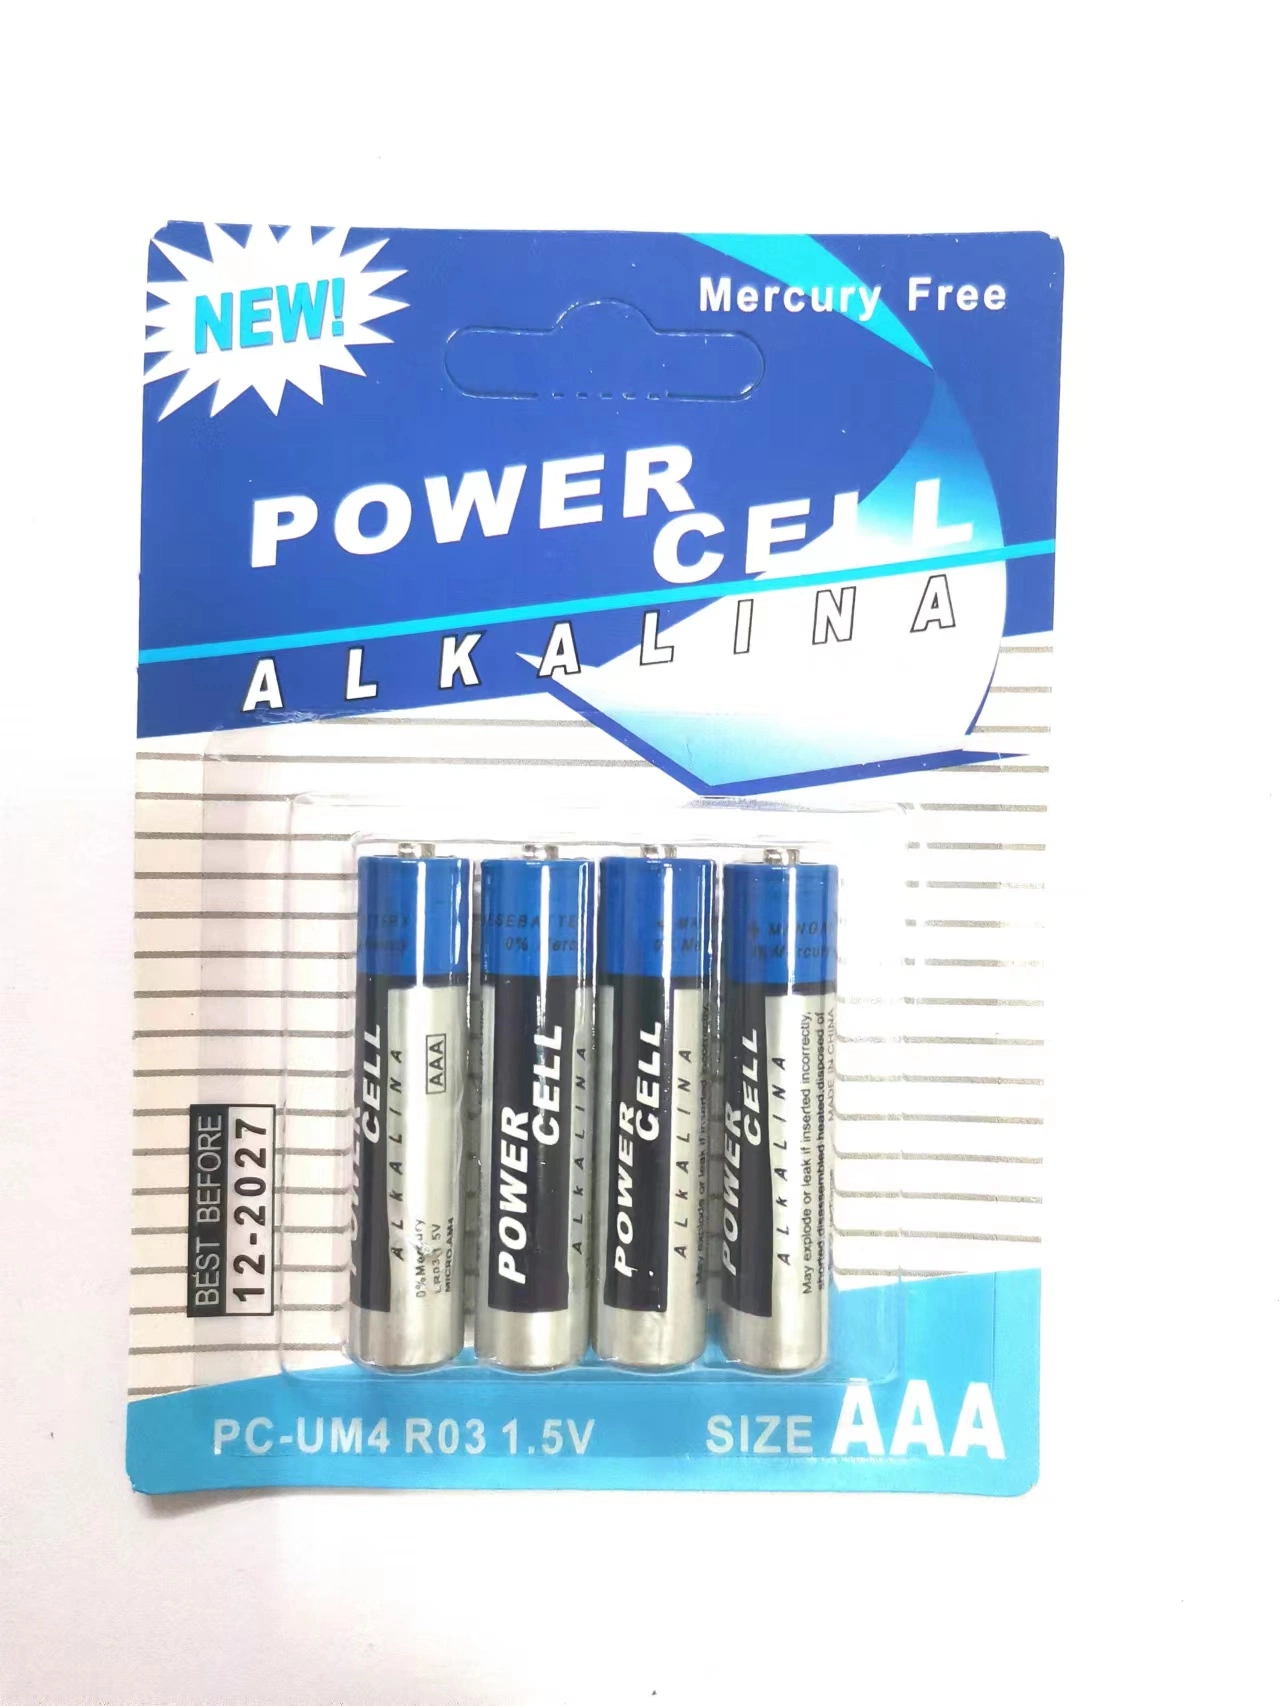 Батарея из углеродного цинка AAA R03 UM-4 1,5 в Powercell, 4 ШТ. Упаковка блистерных карт сухой батарейный отсек для бытовой электроники/ Дистанционное управление/Бытовая электроника